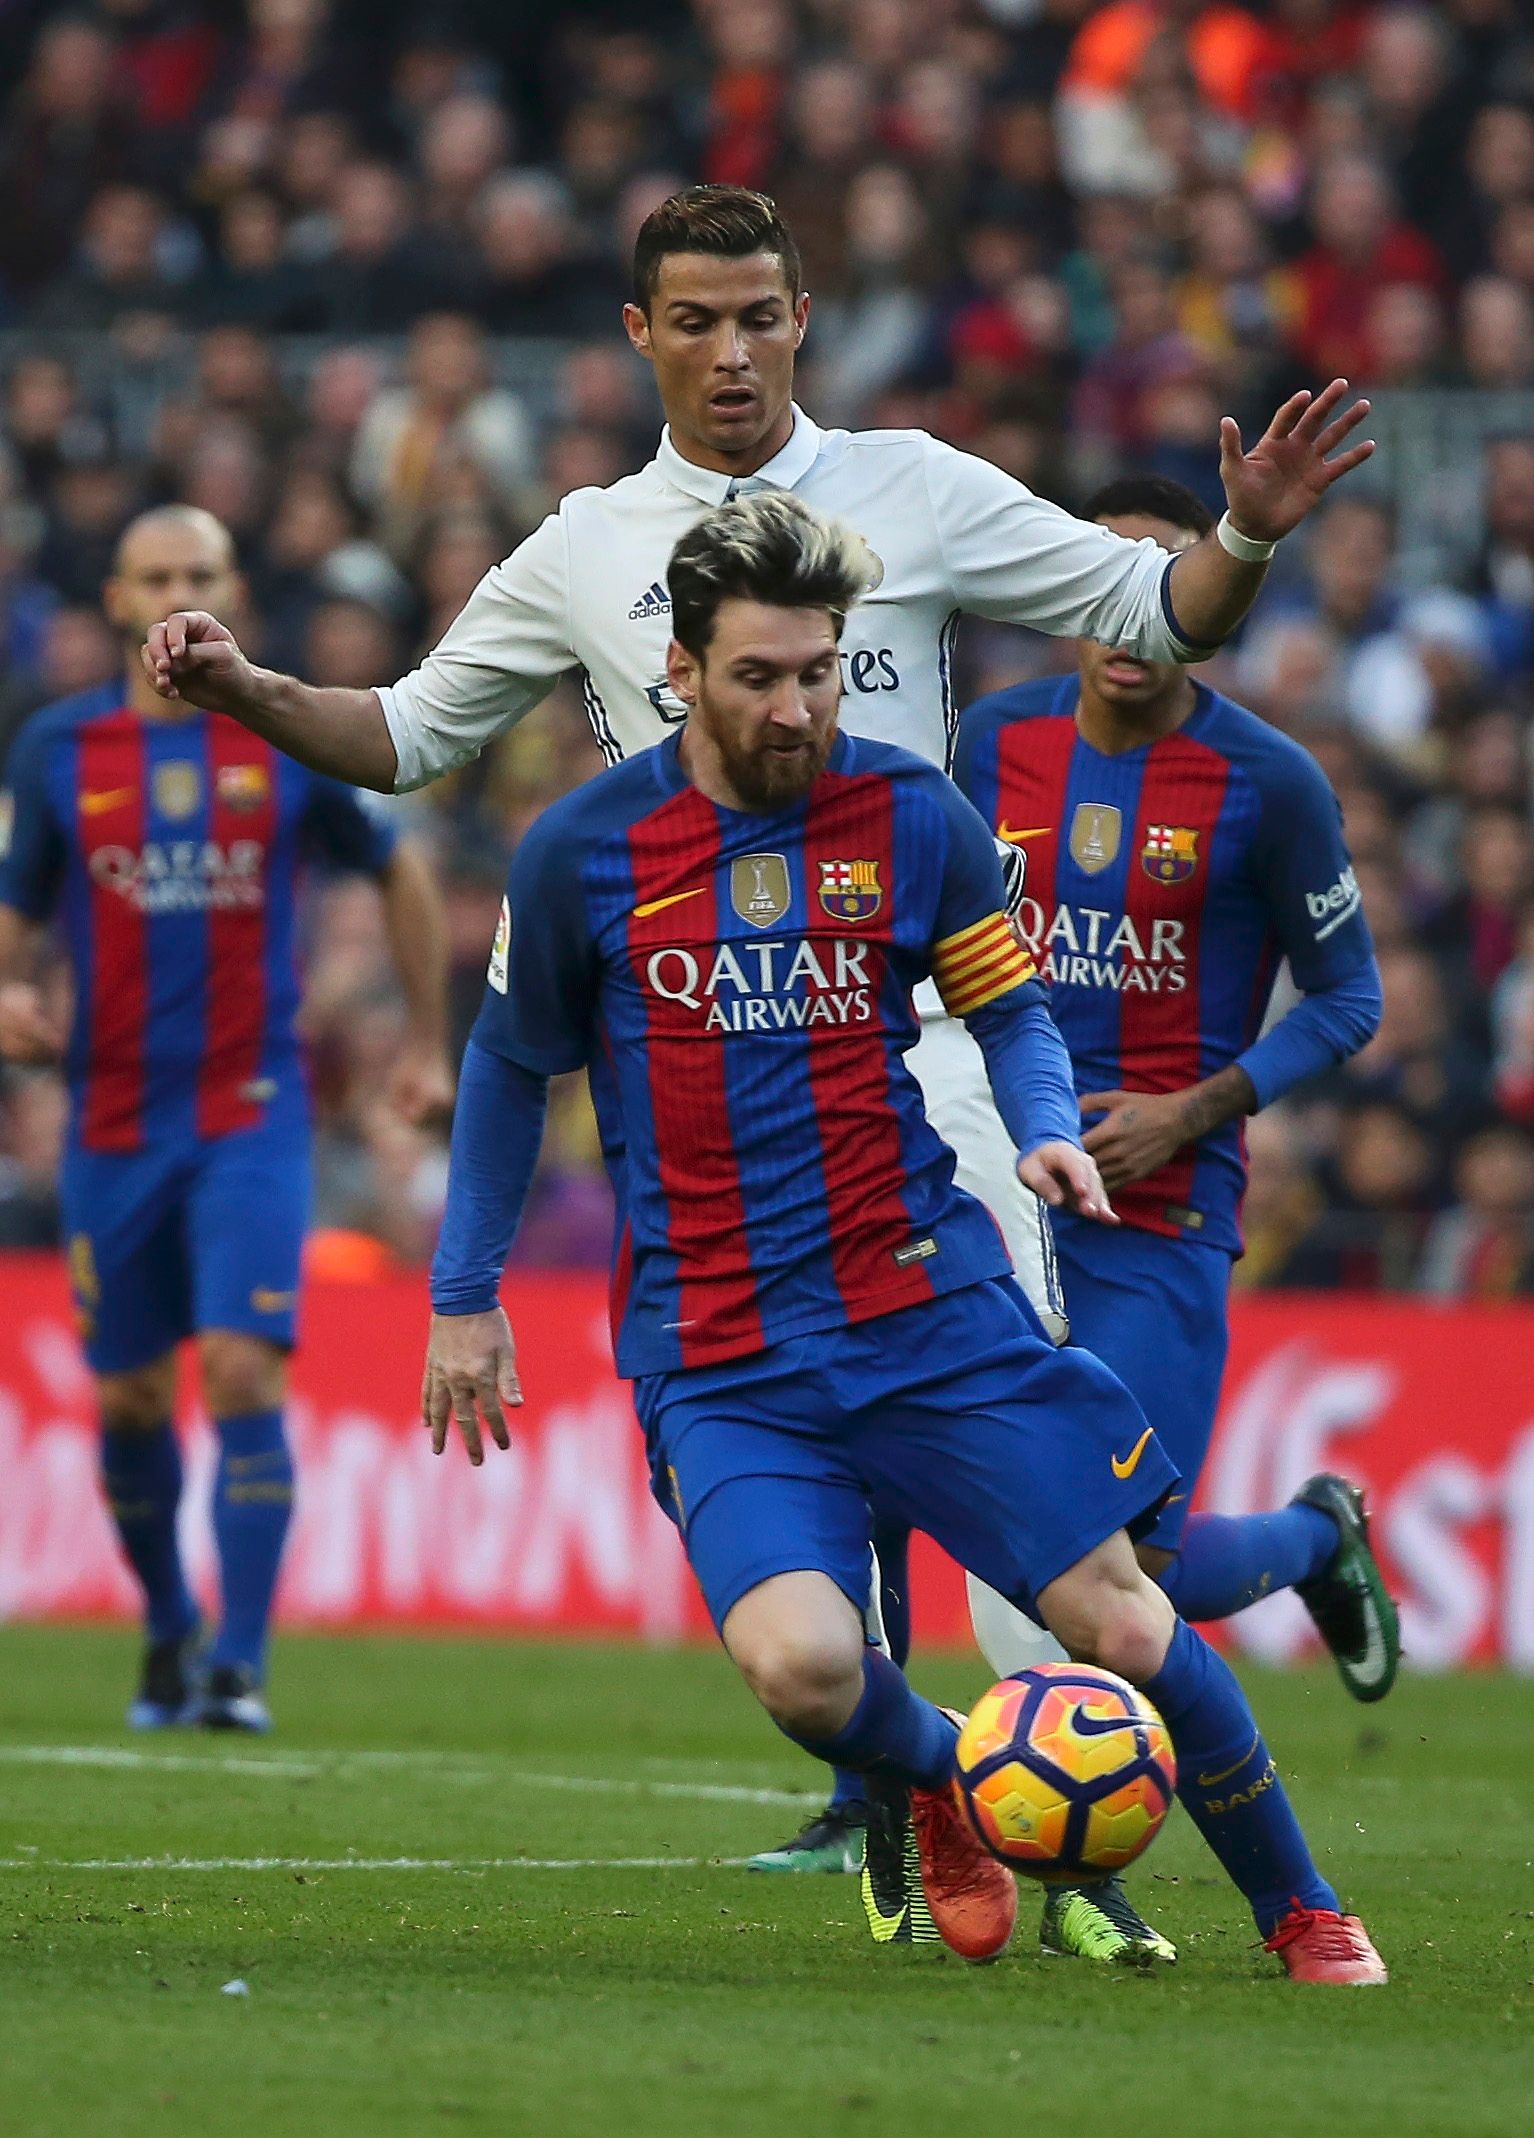 Ronaldo and Messi compete in El Clasico.